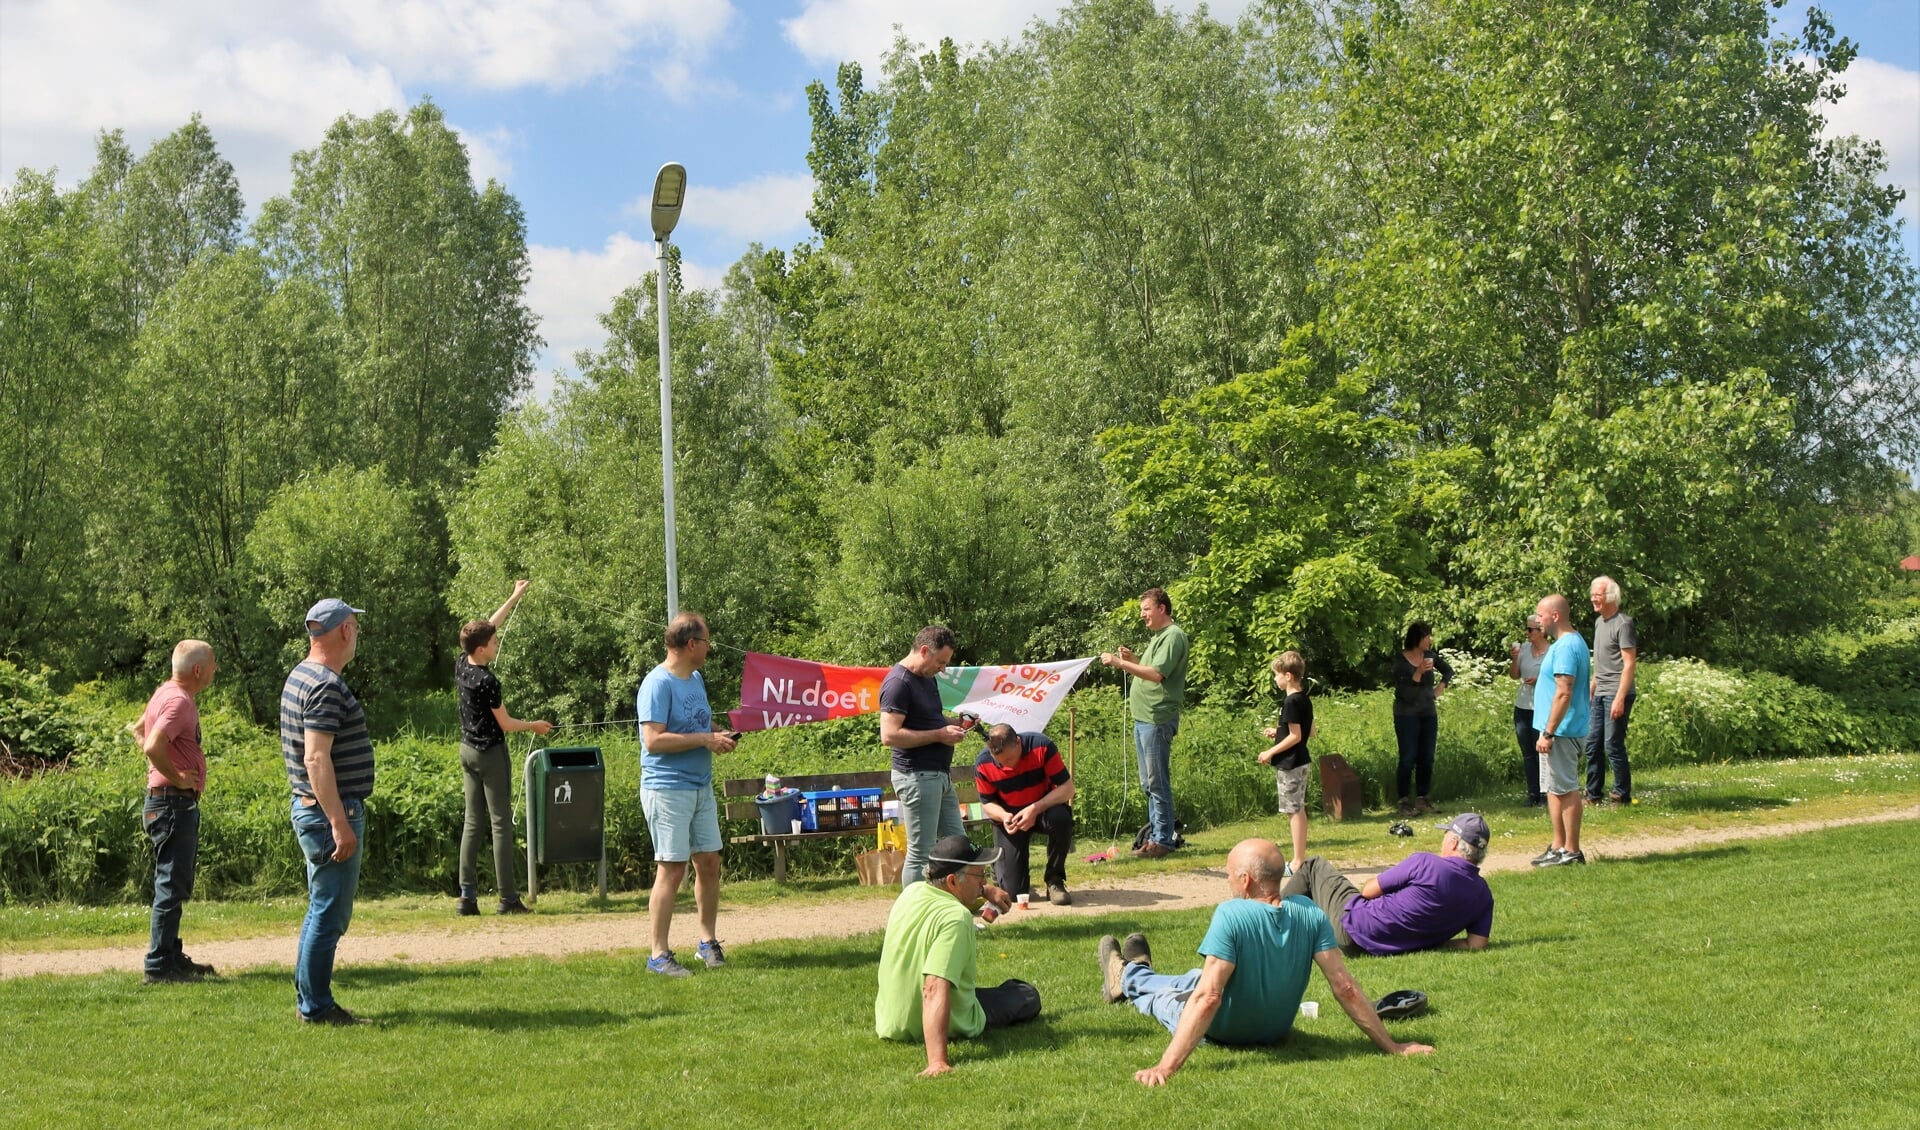 NL Doet actie bij Park Groenewoud in Boven-Leeuwen